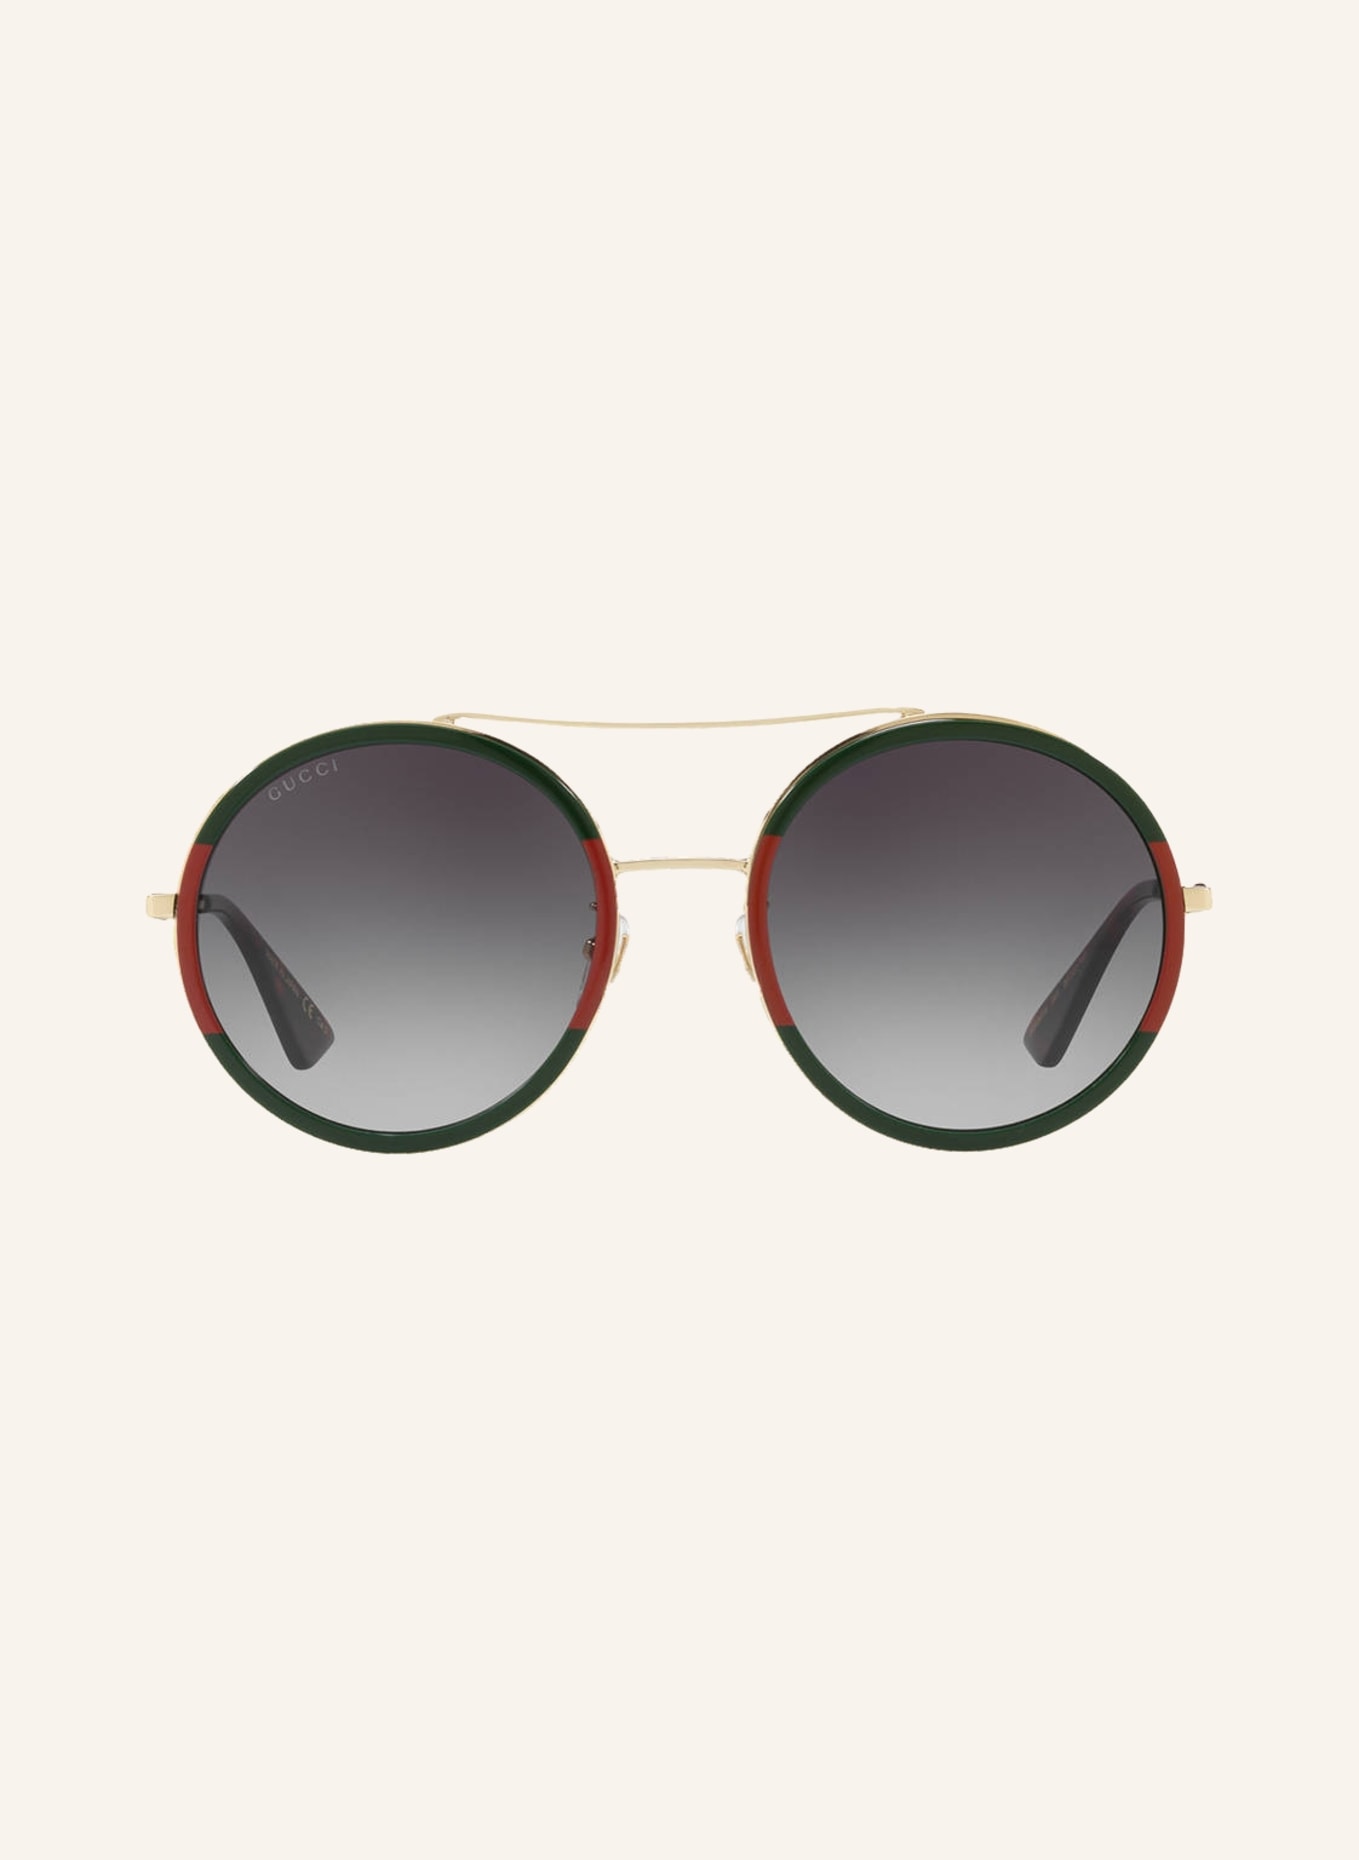 GUCCI Sunglasses GG0061S in 4470j1 - gold/ gray gradient